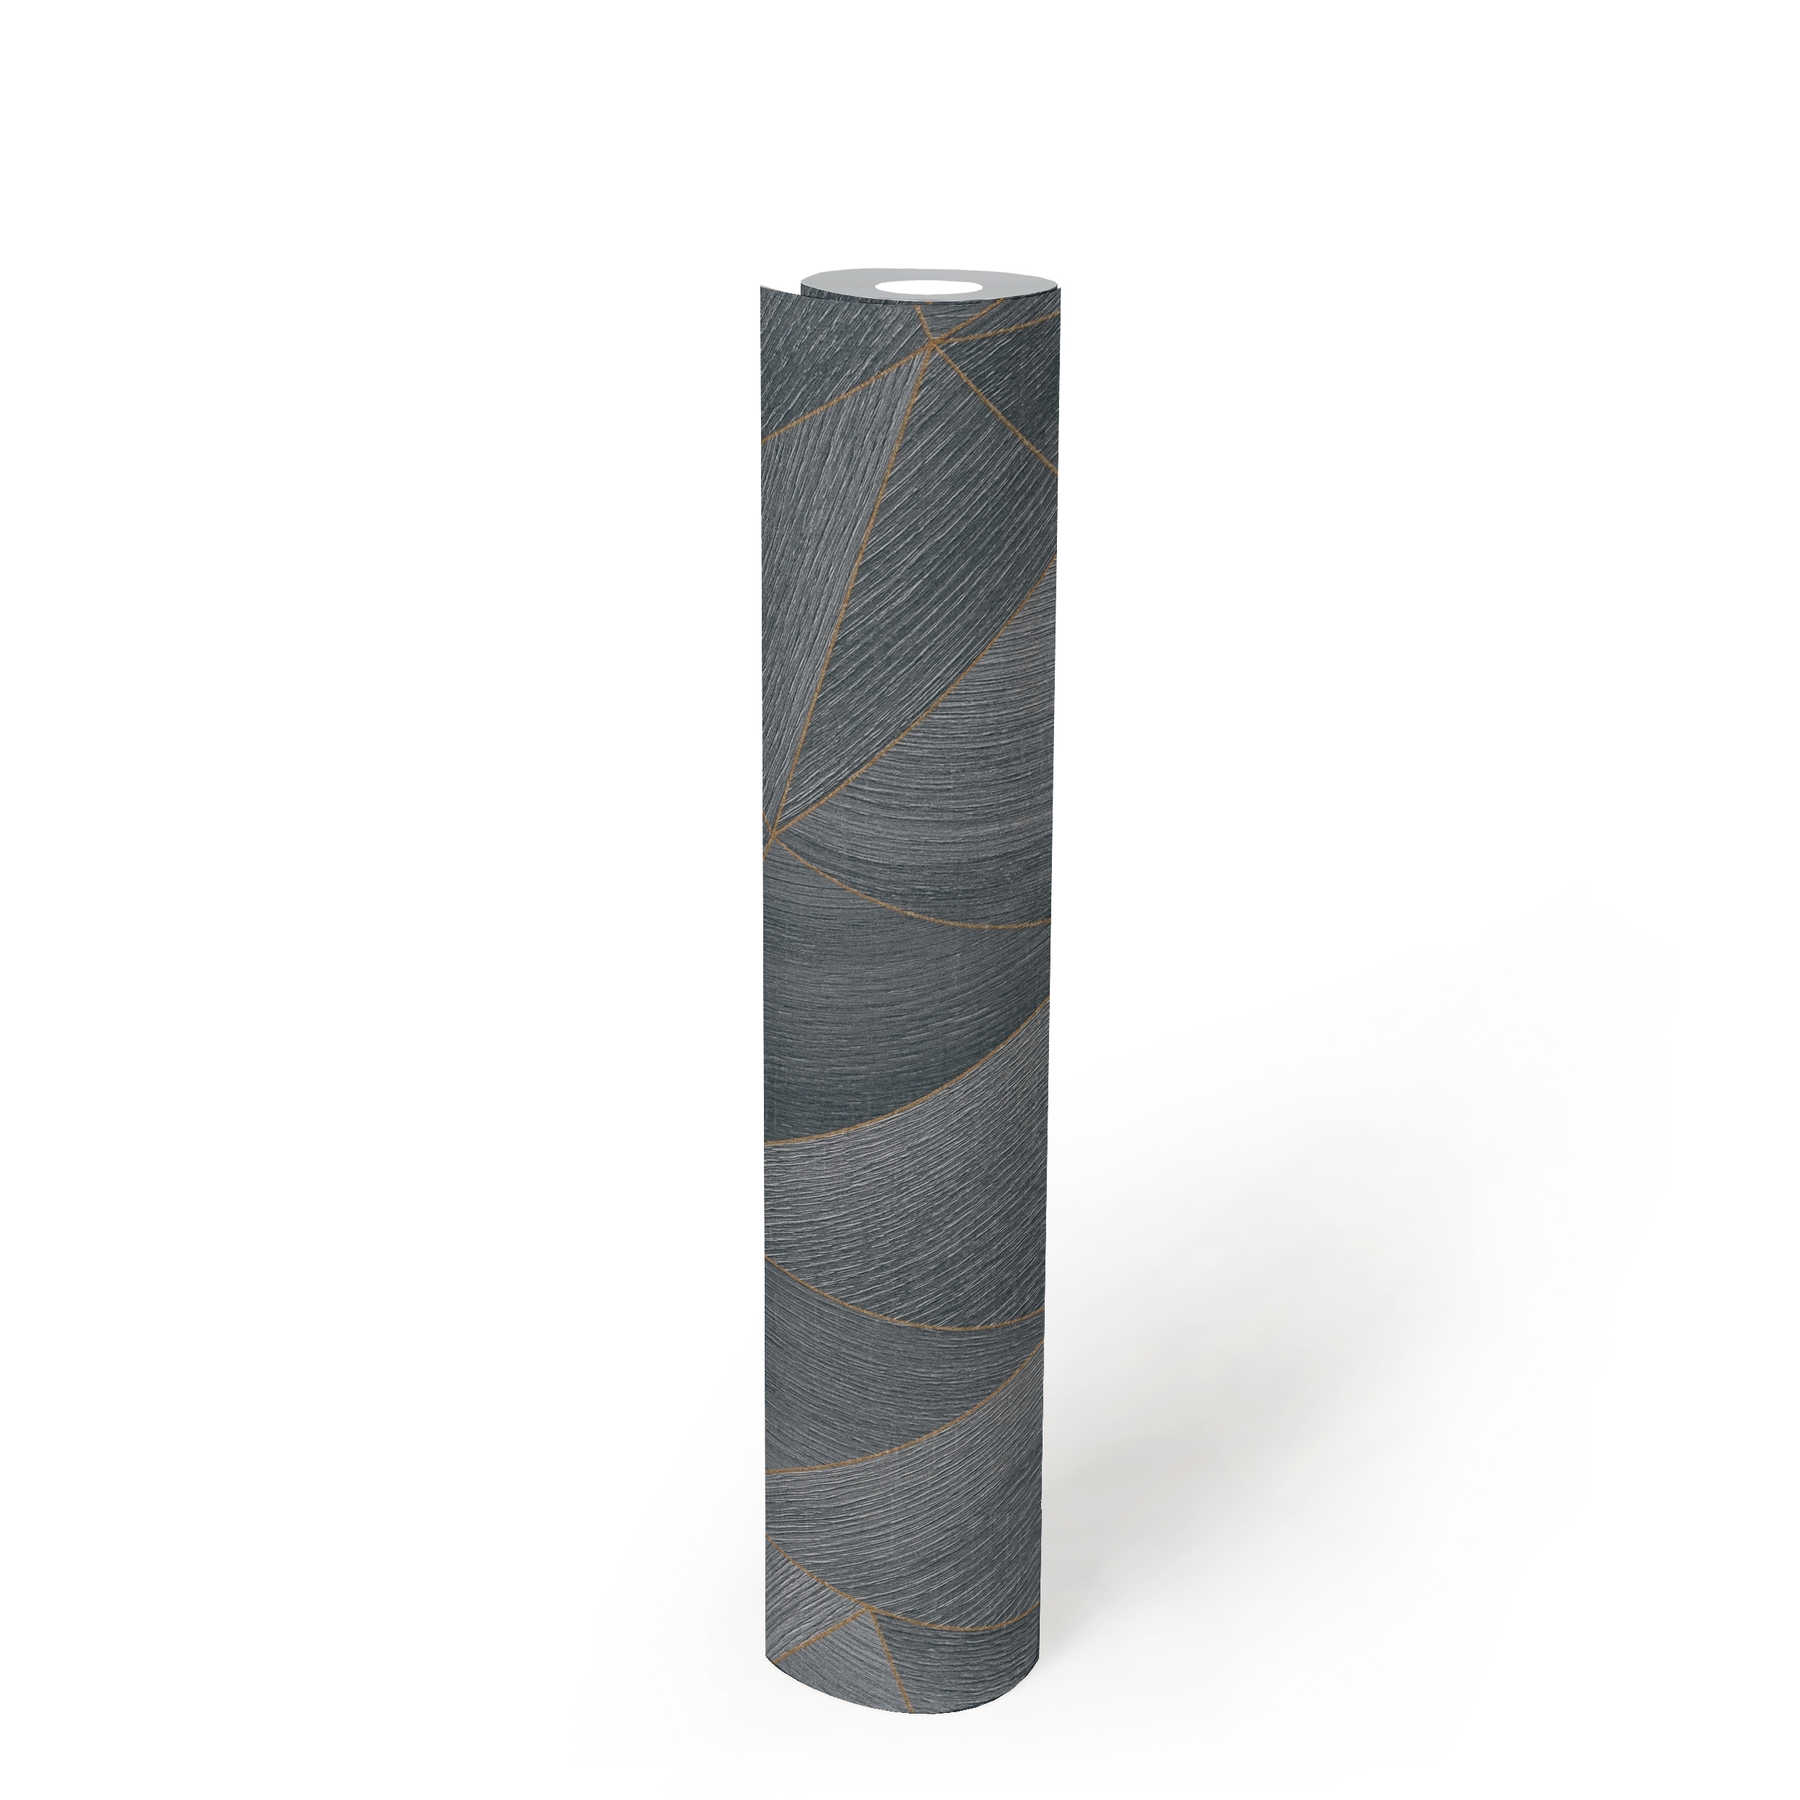             Papel pintado de madera con motivos geométricos y efecto metálico - gris, negro
        